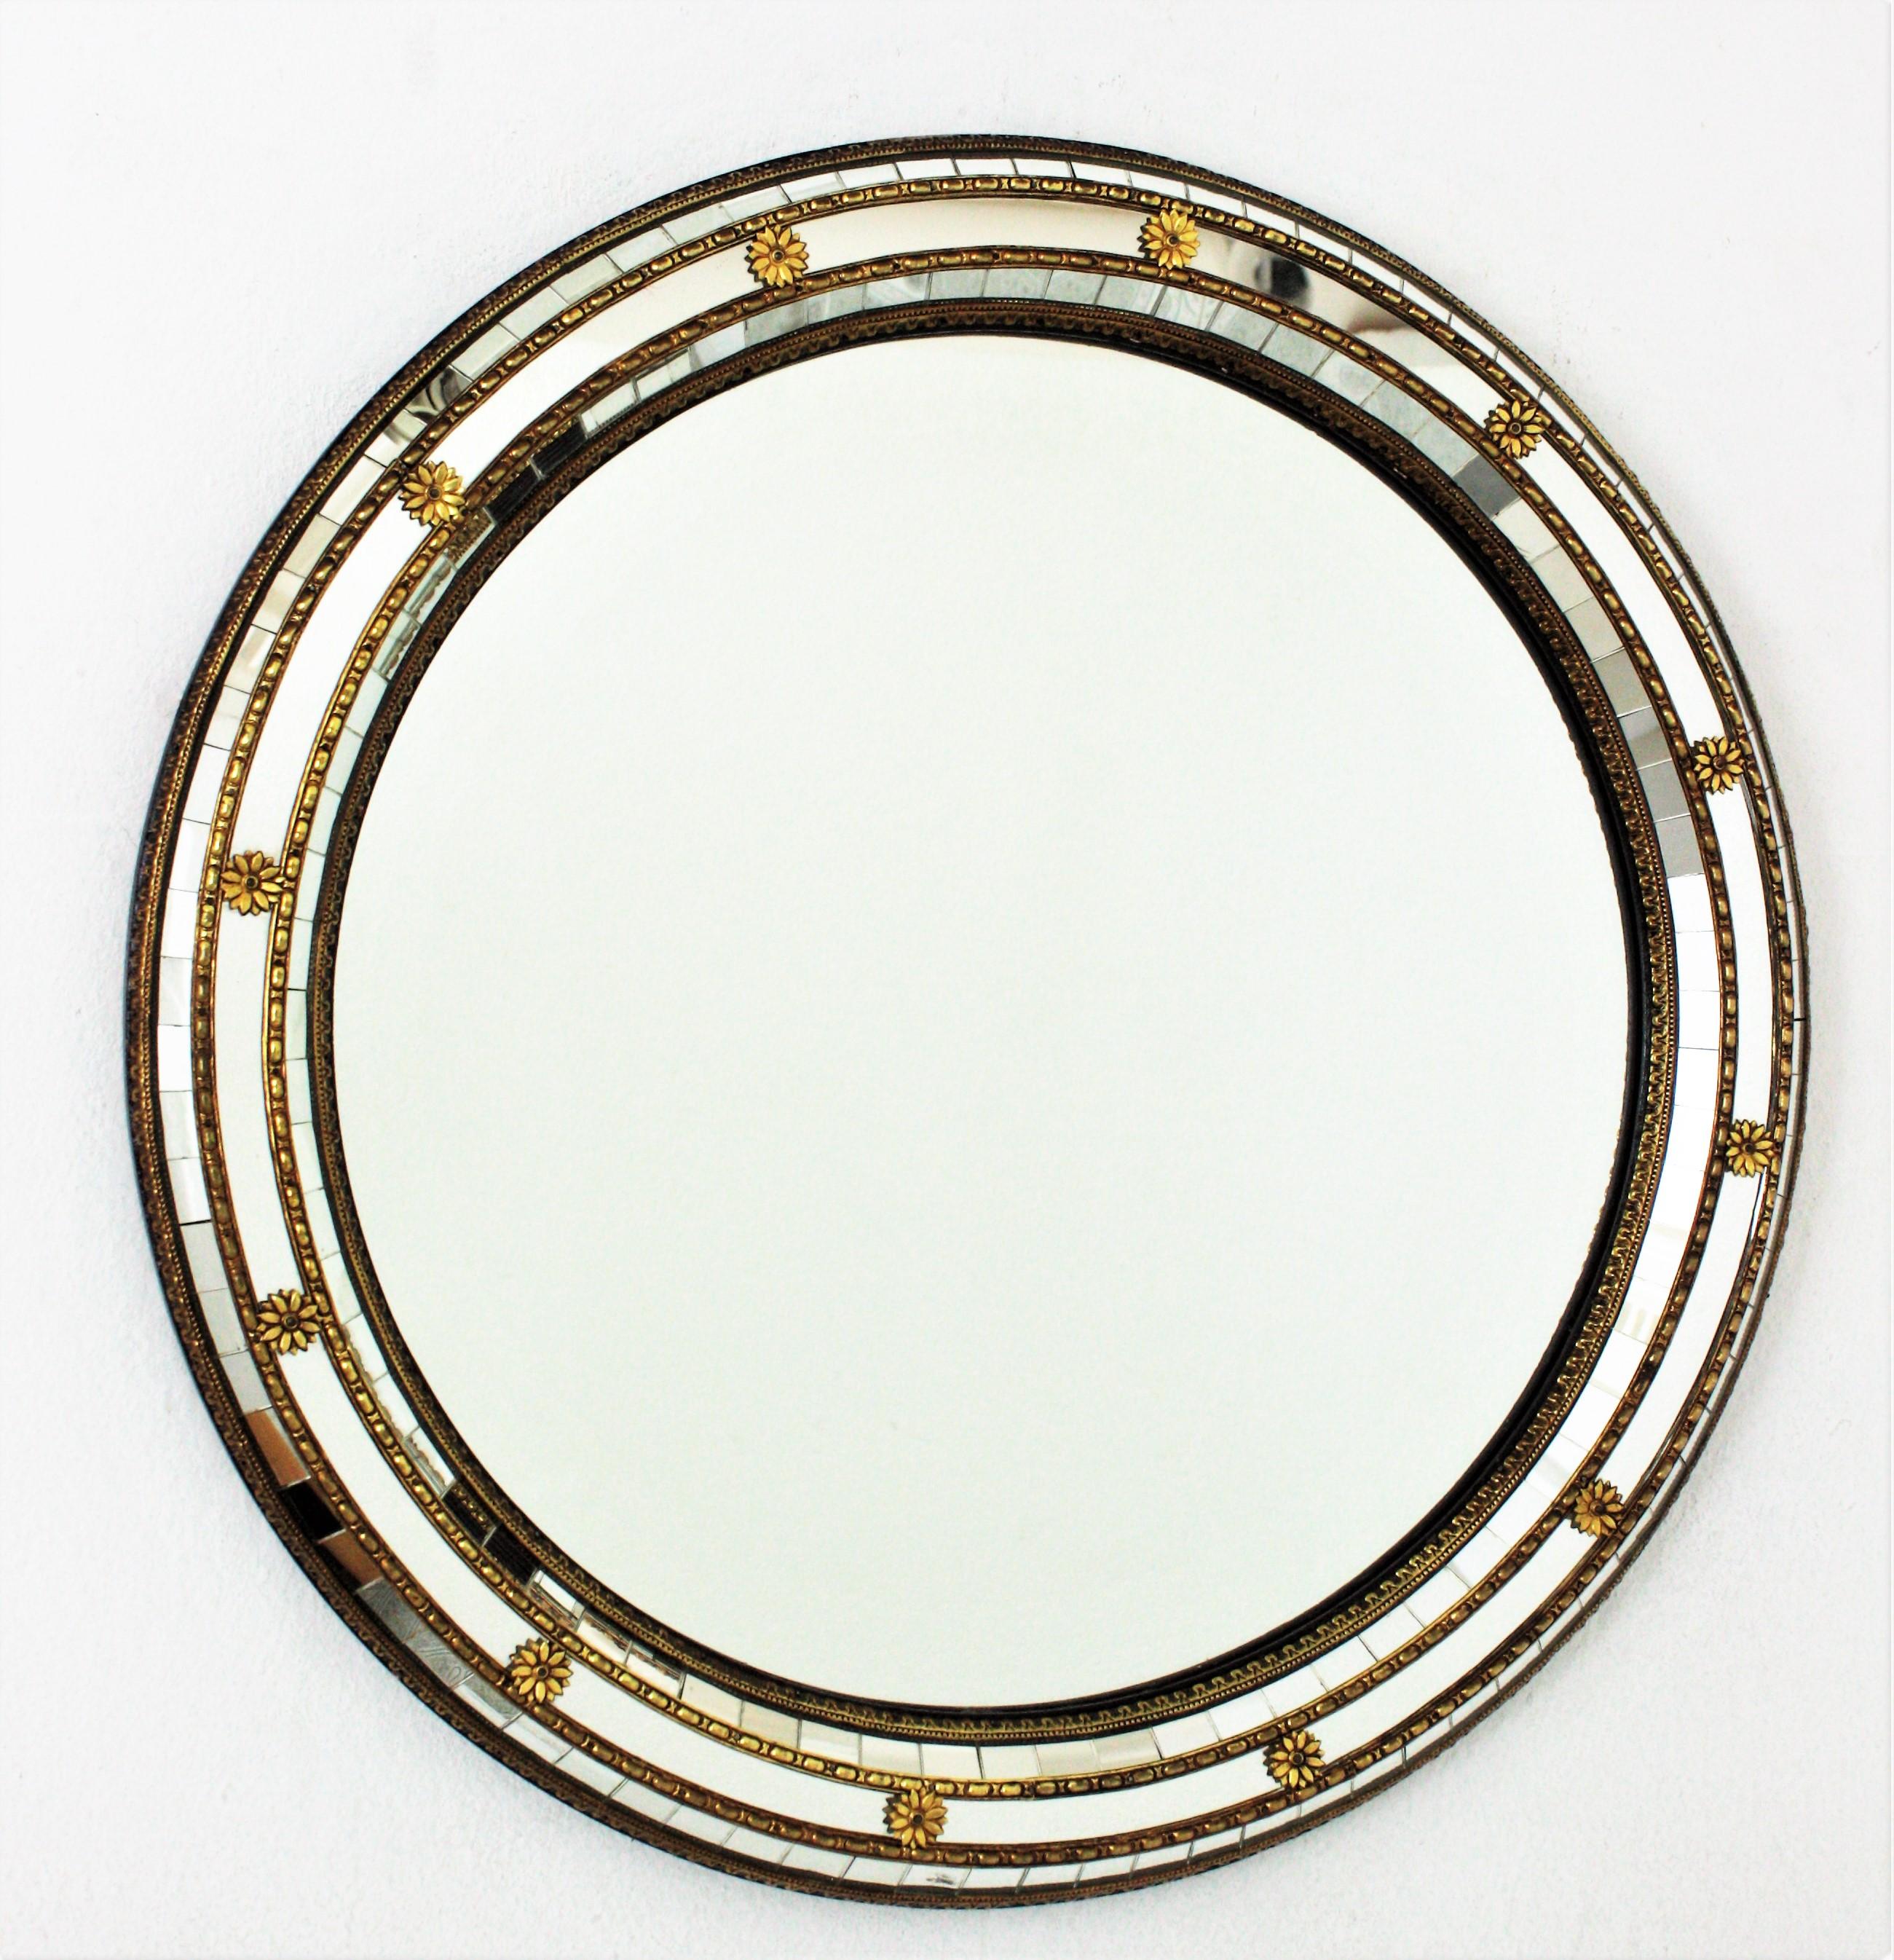 Miroir mural rond de style vénitien avec accents en laiton, Espagne, années 1950-1960.
Ce miroir circulaire est doté d'un cadre à triple miroir. Les panneaux miroirs sont ornés de motifs et de fleurs en métal.
Ce miroir mural sera parfait dans une